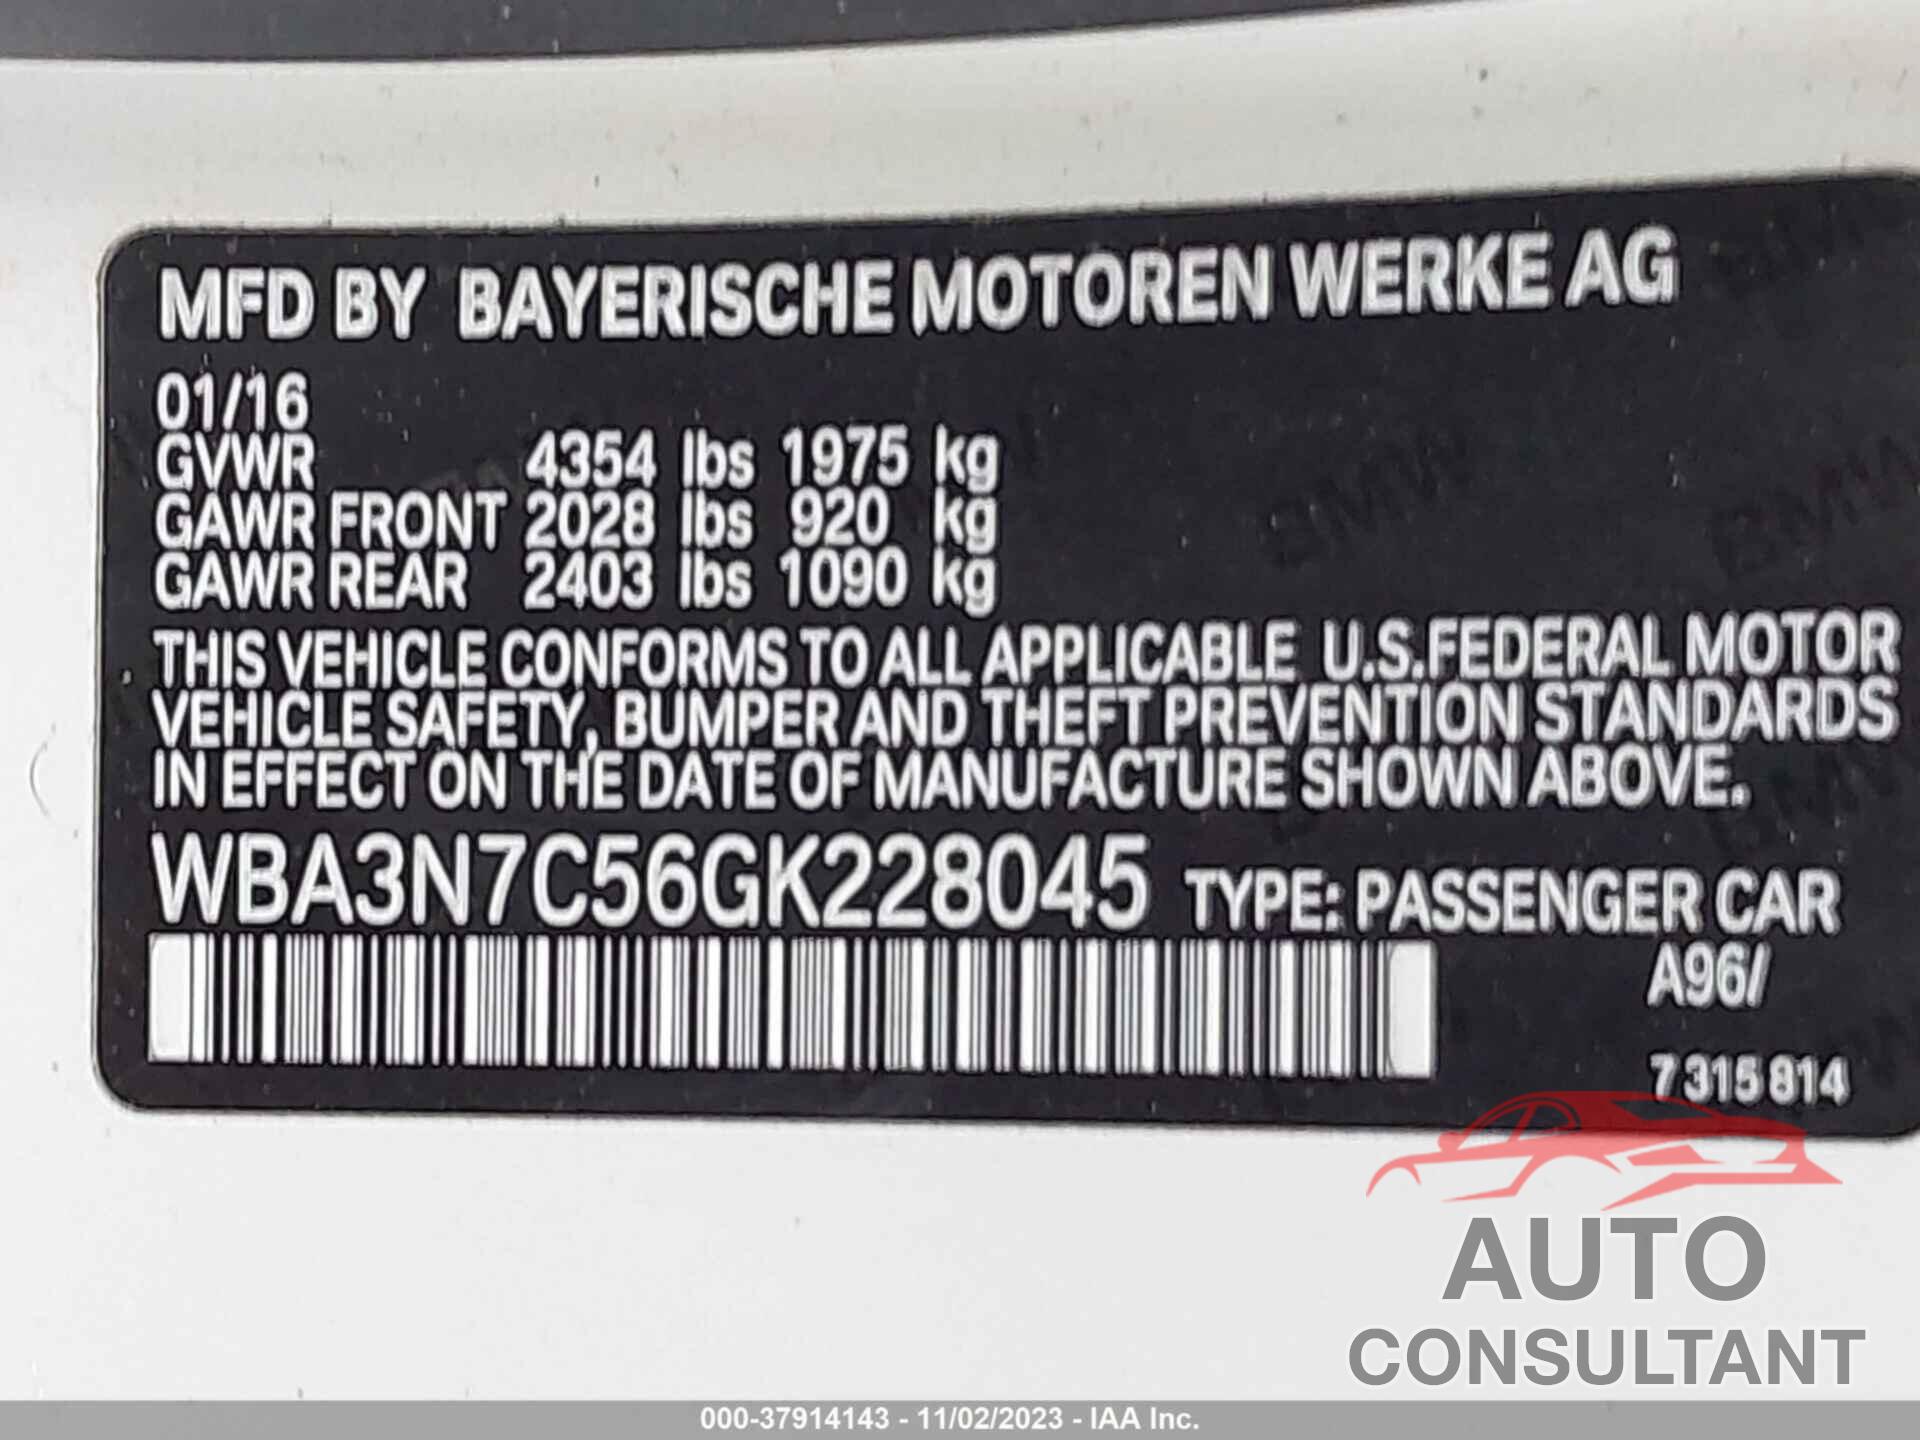 BMW 428 2016 - WBA3N7C56GK228045